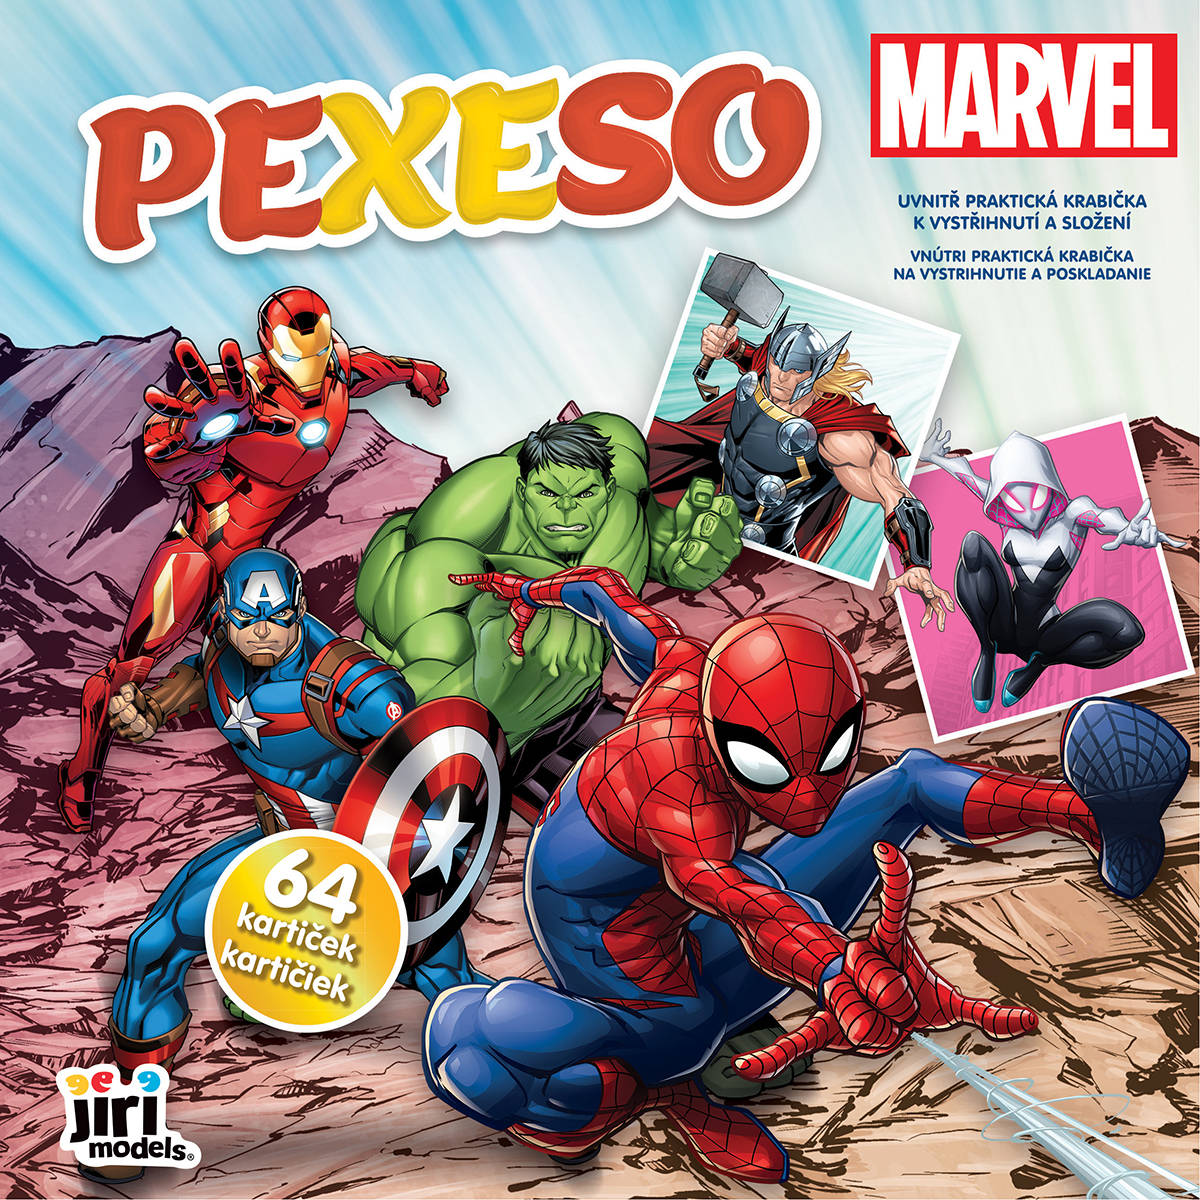 JIRI MODELS Pexeso v sešitu Marvel s krabičkou a omalovánkou